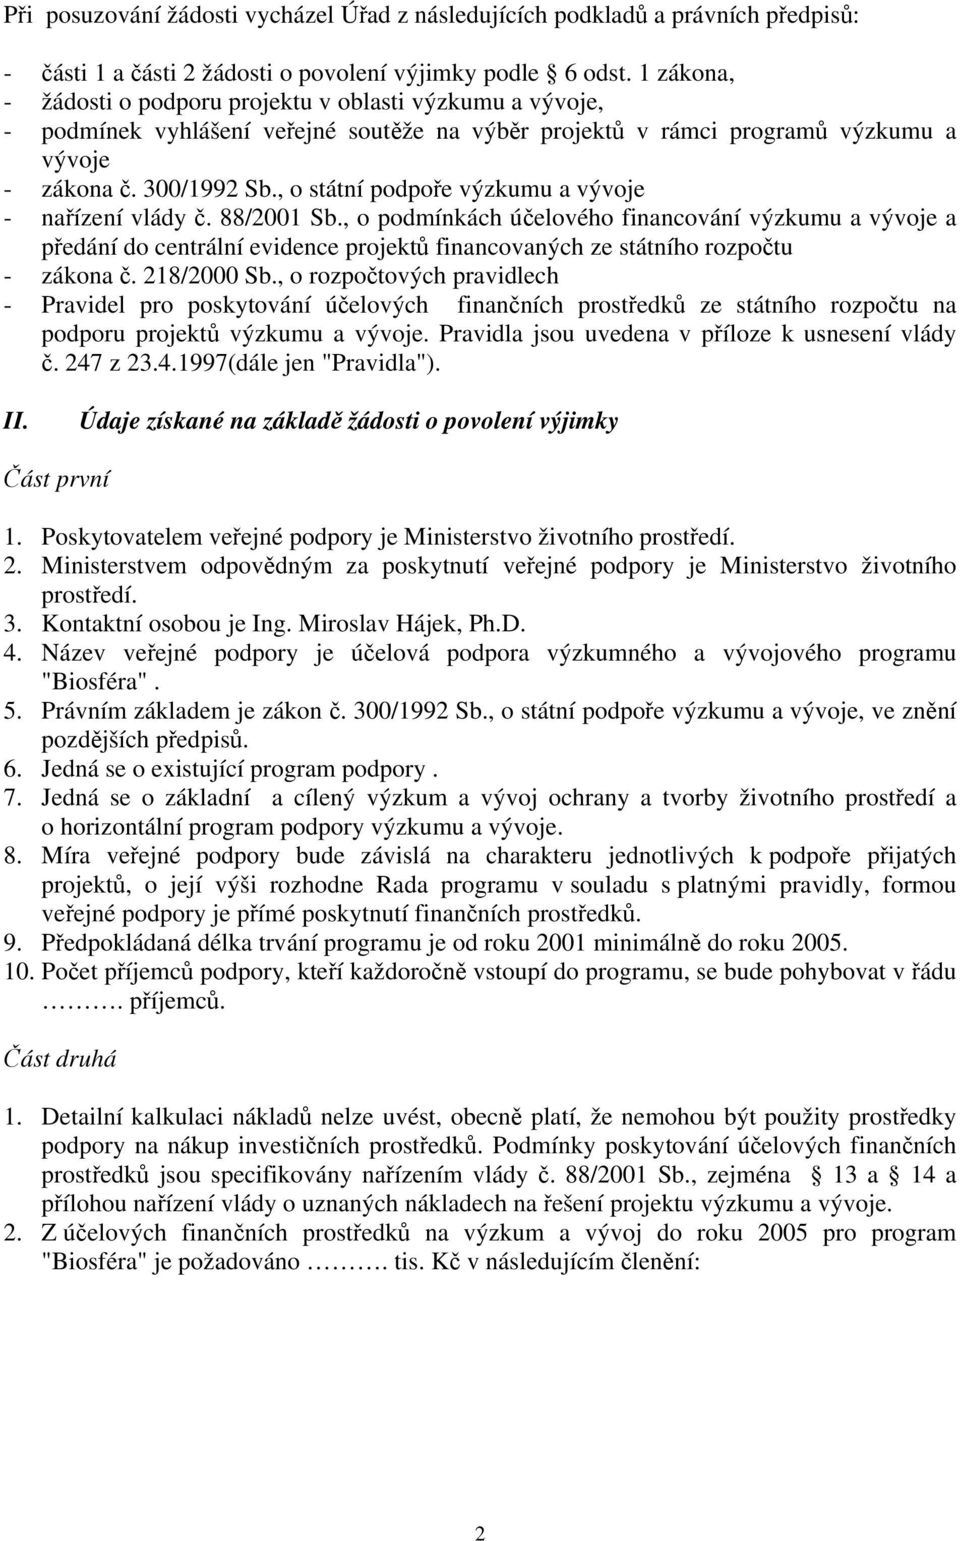 , o státní podpoře výzkumu a vývoje - nařízení vlády č. 88/2001 Sb.